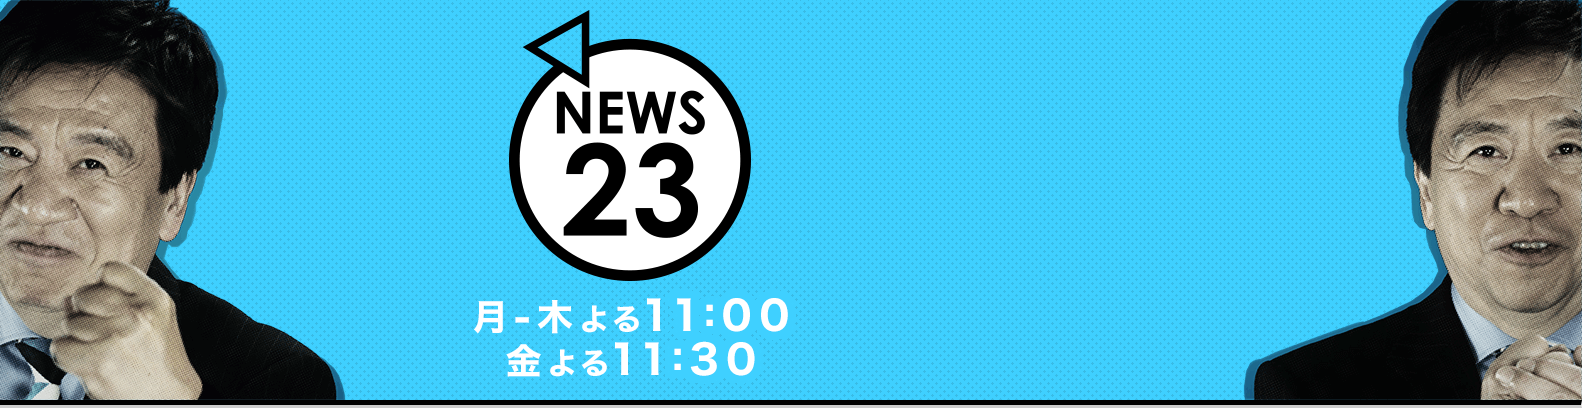 [TV Broadcast] NEWS 23